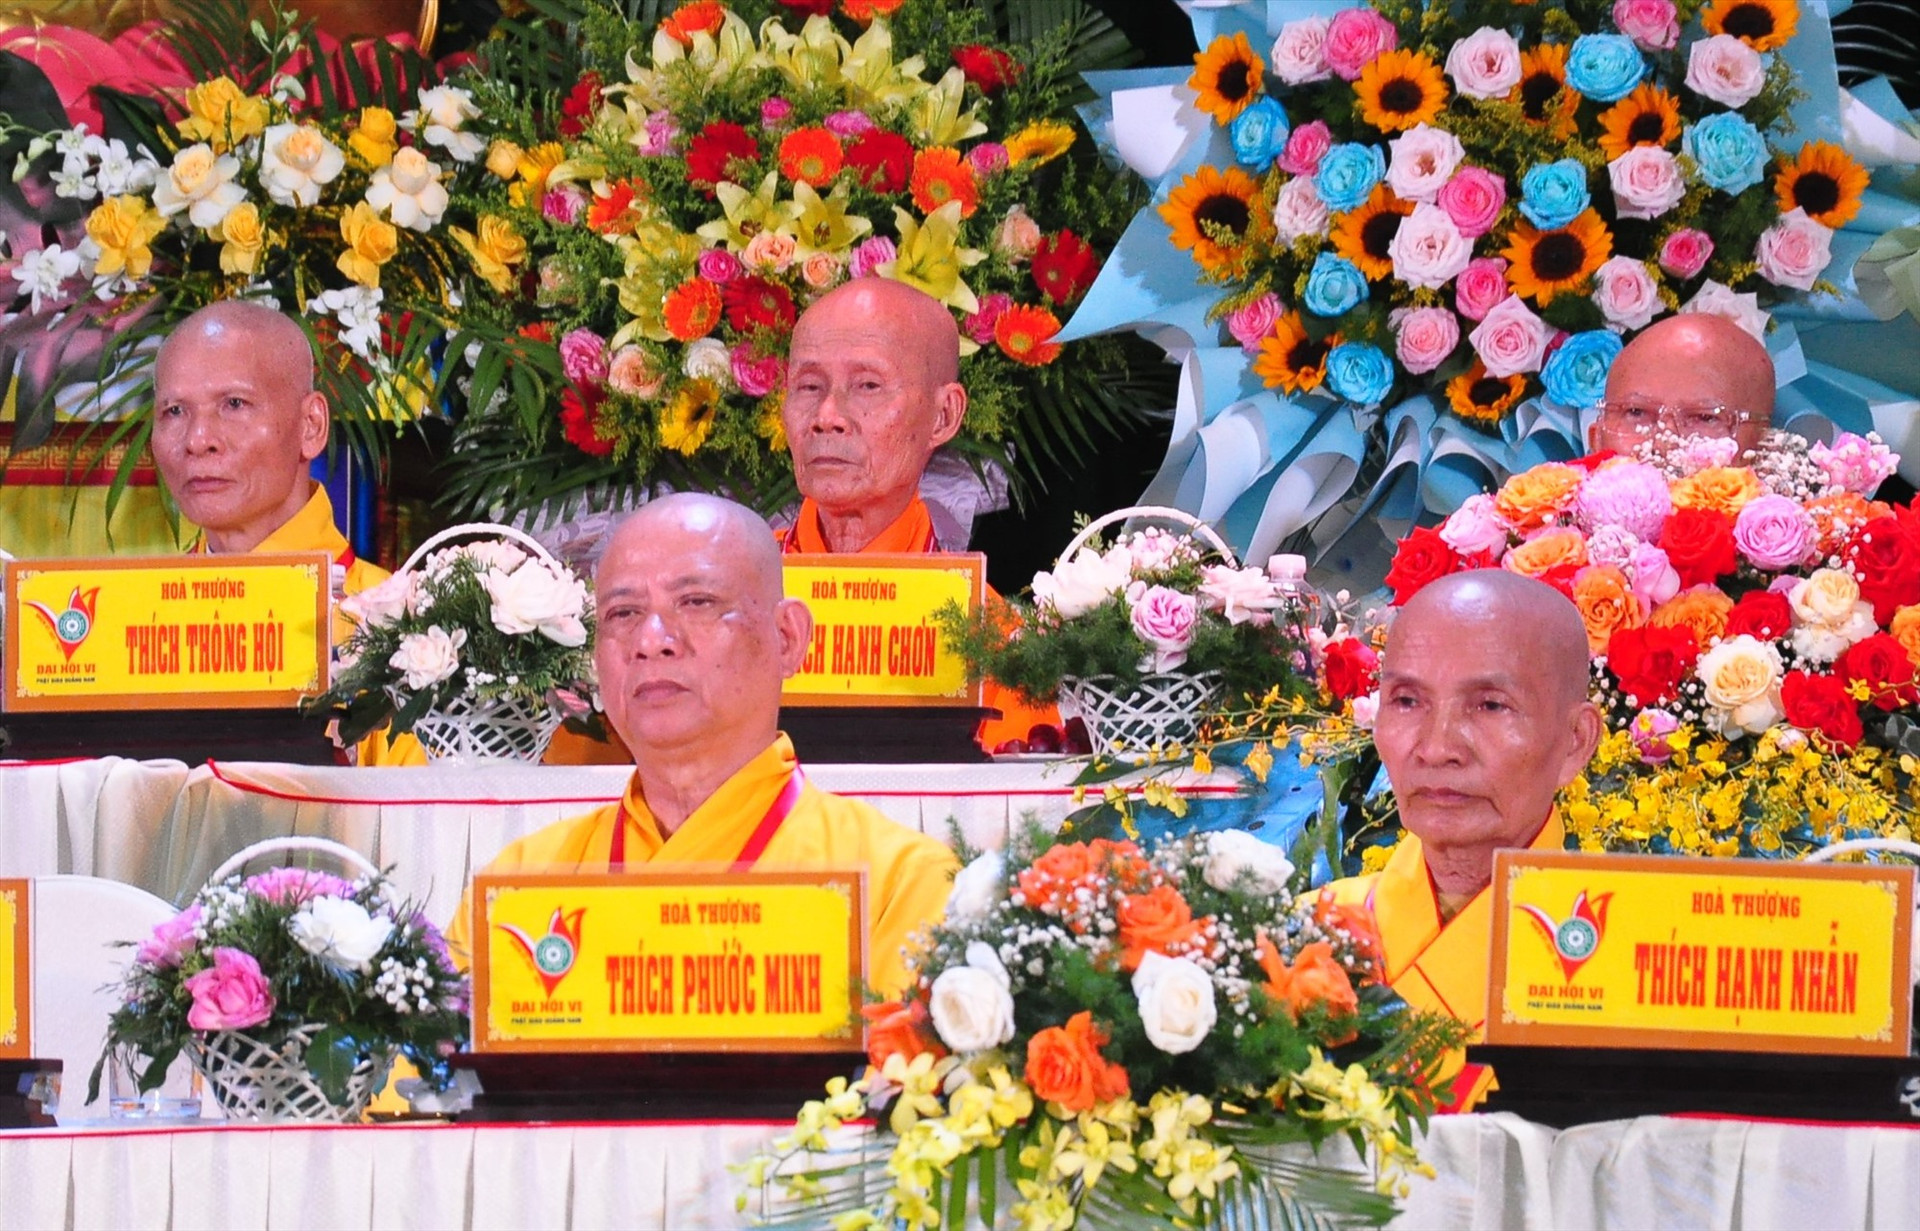 Hòa thượng Thích Phước Minh (ngồi hàng đầu bên trái) được suy cử giữ chức Trưởng Ban Trị sự GHPG Việt Nam tỉnh khóa VI thay cho Hòa thượng Thích Thiện Thành. Ảnh: V.A